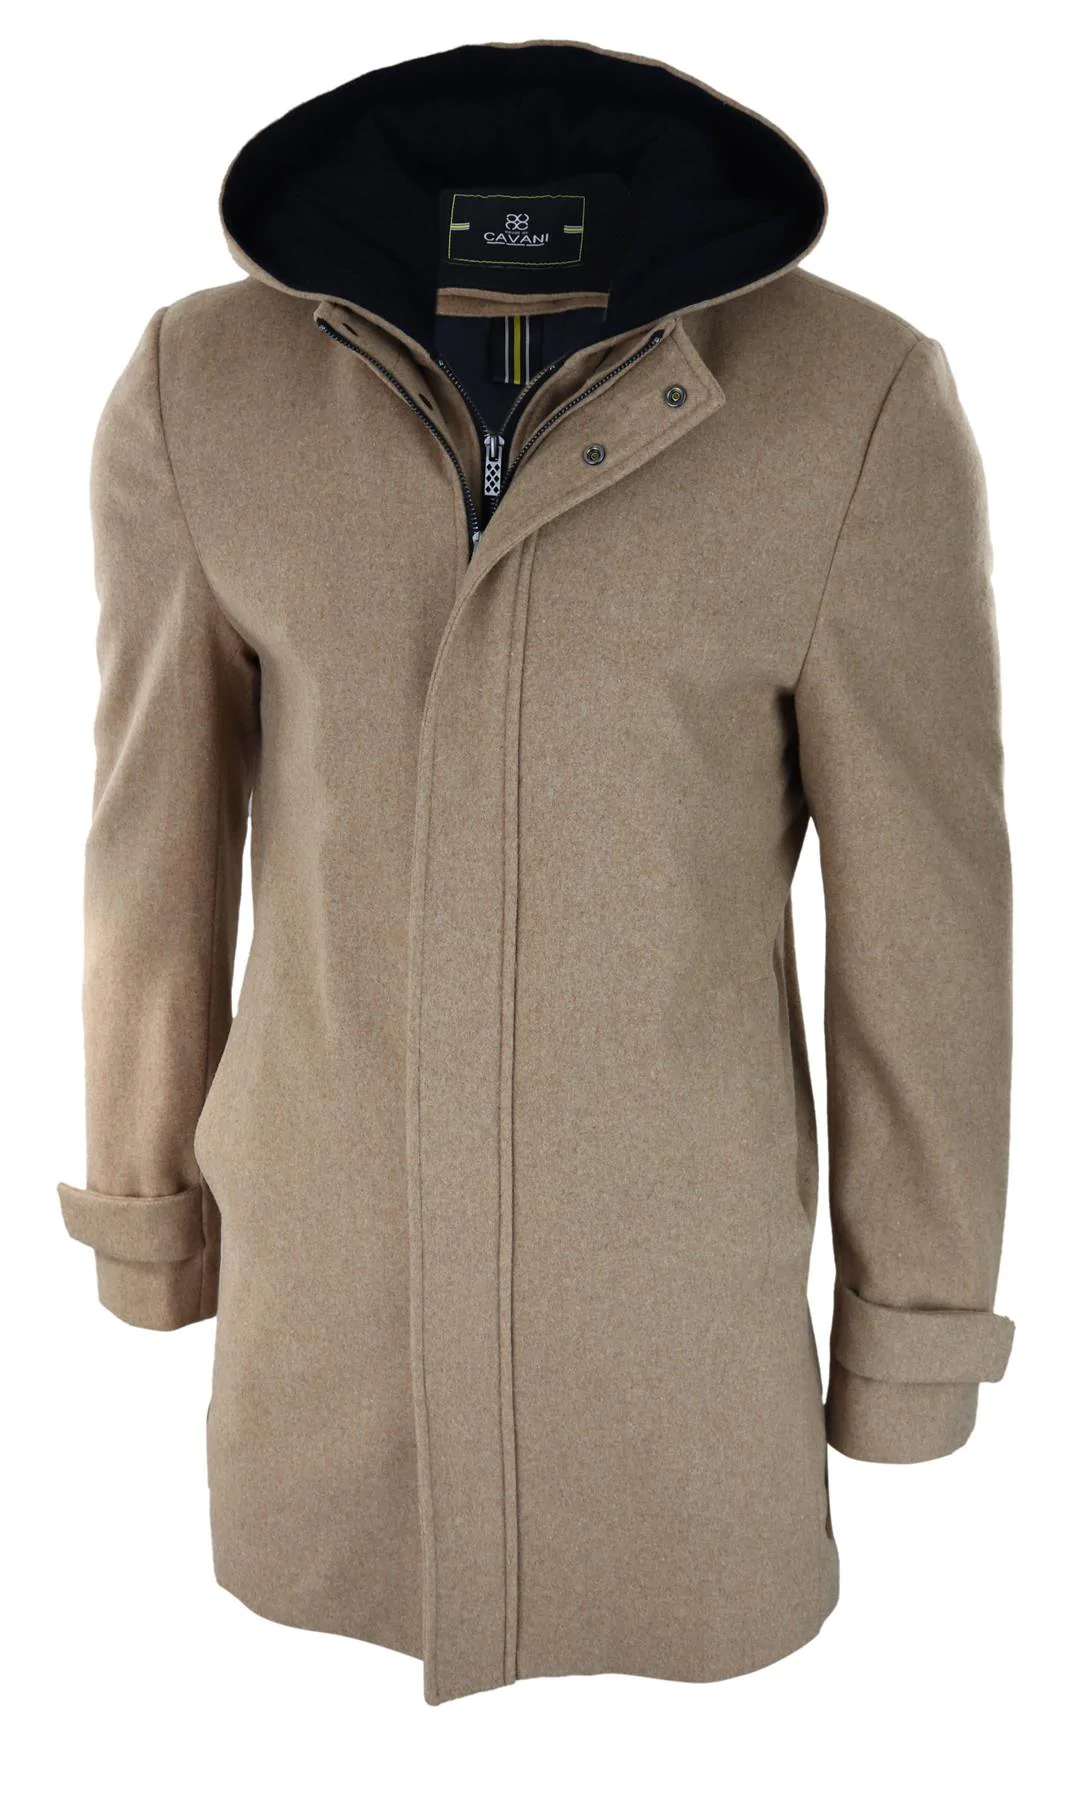 Men's Hoods for Coats & Jackets